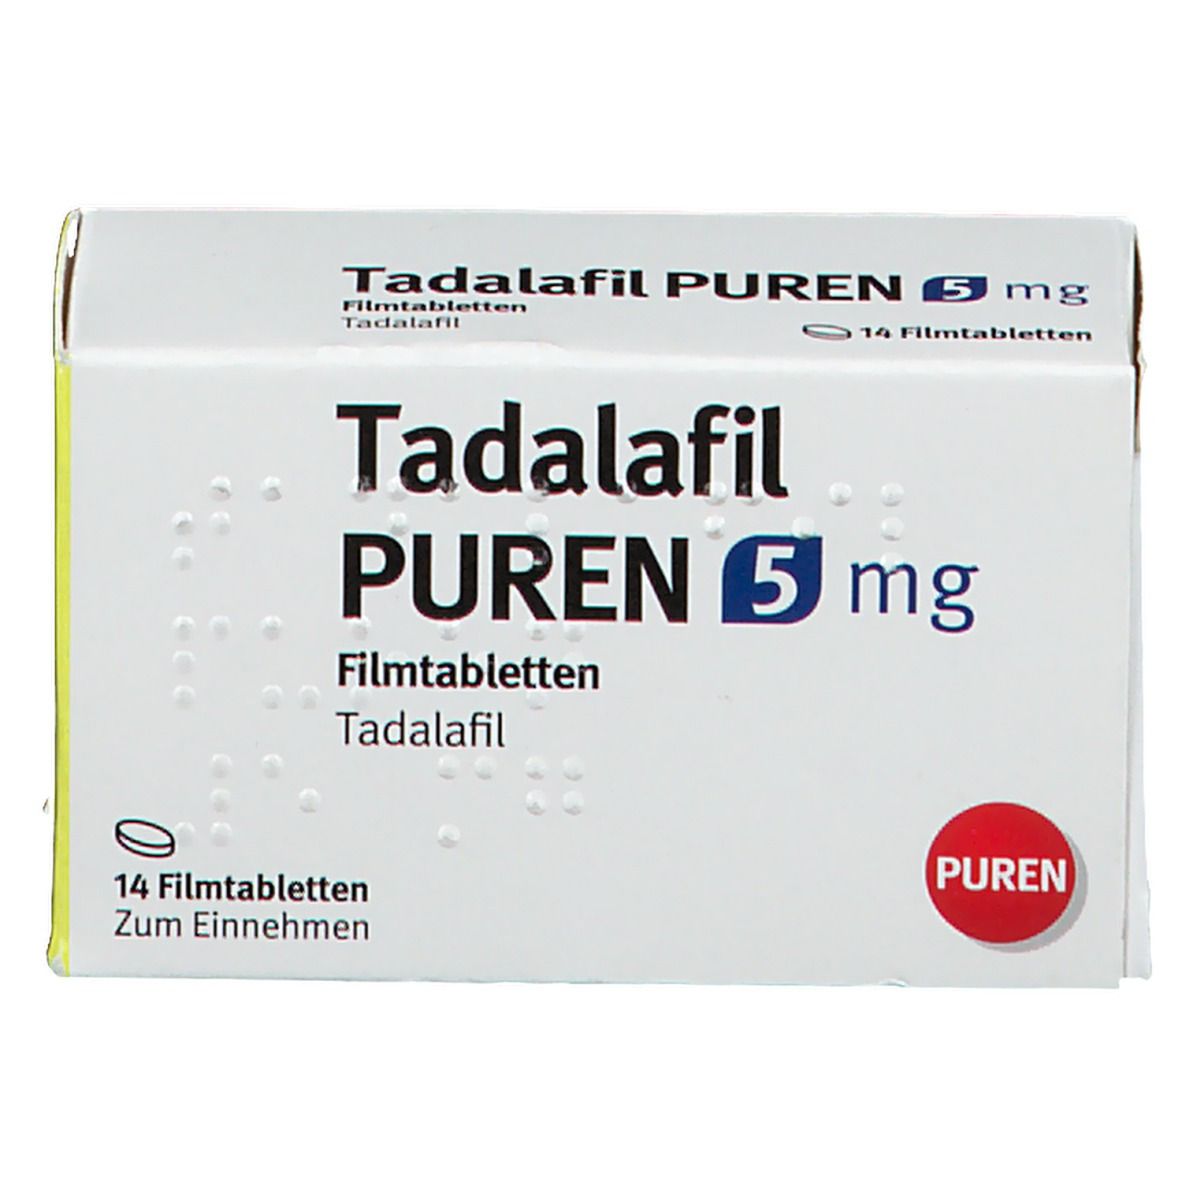 Tadalafil PUREN 5 mg